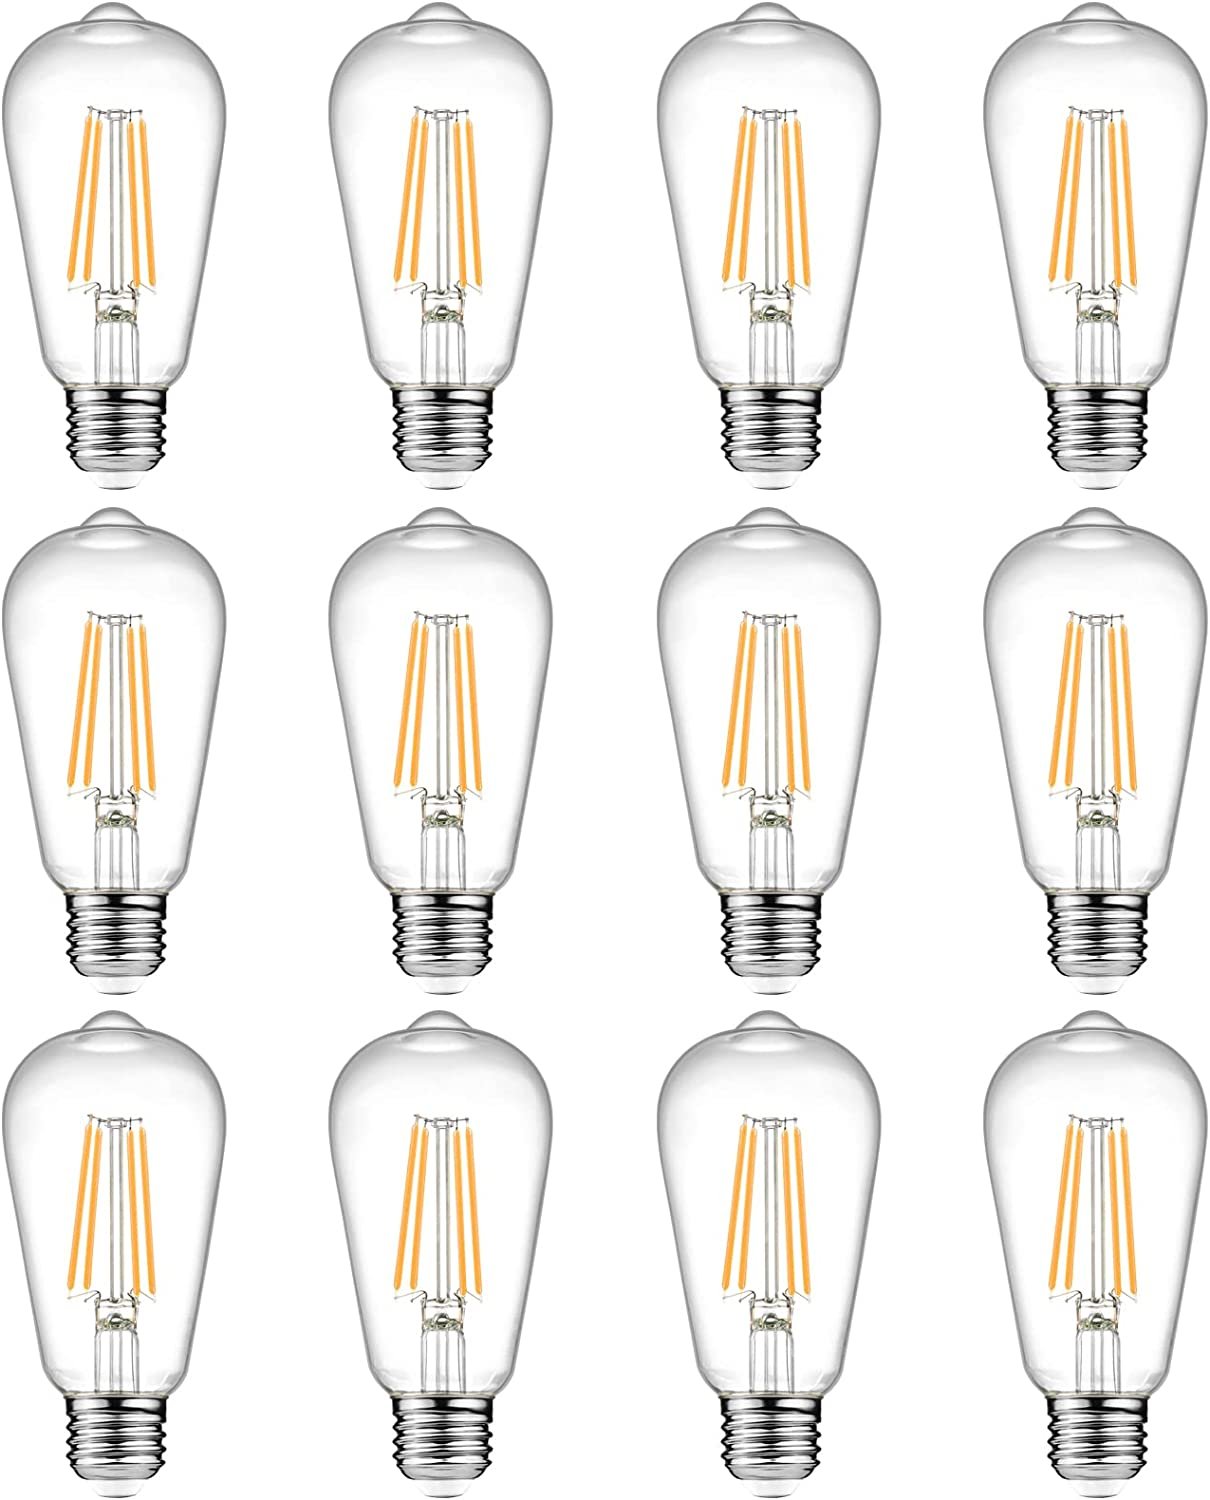 Light Bulbs (Copy)